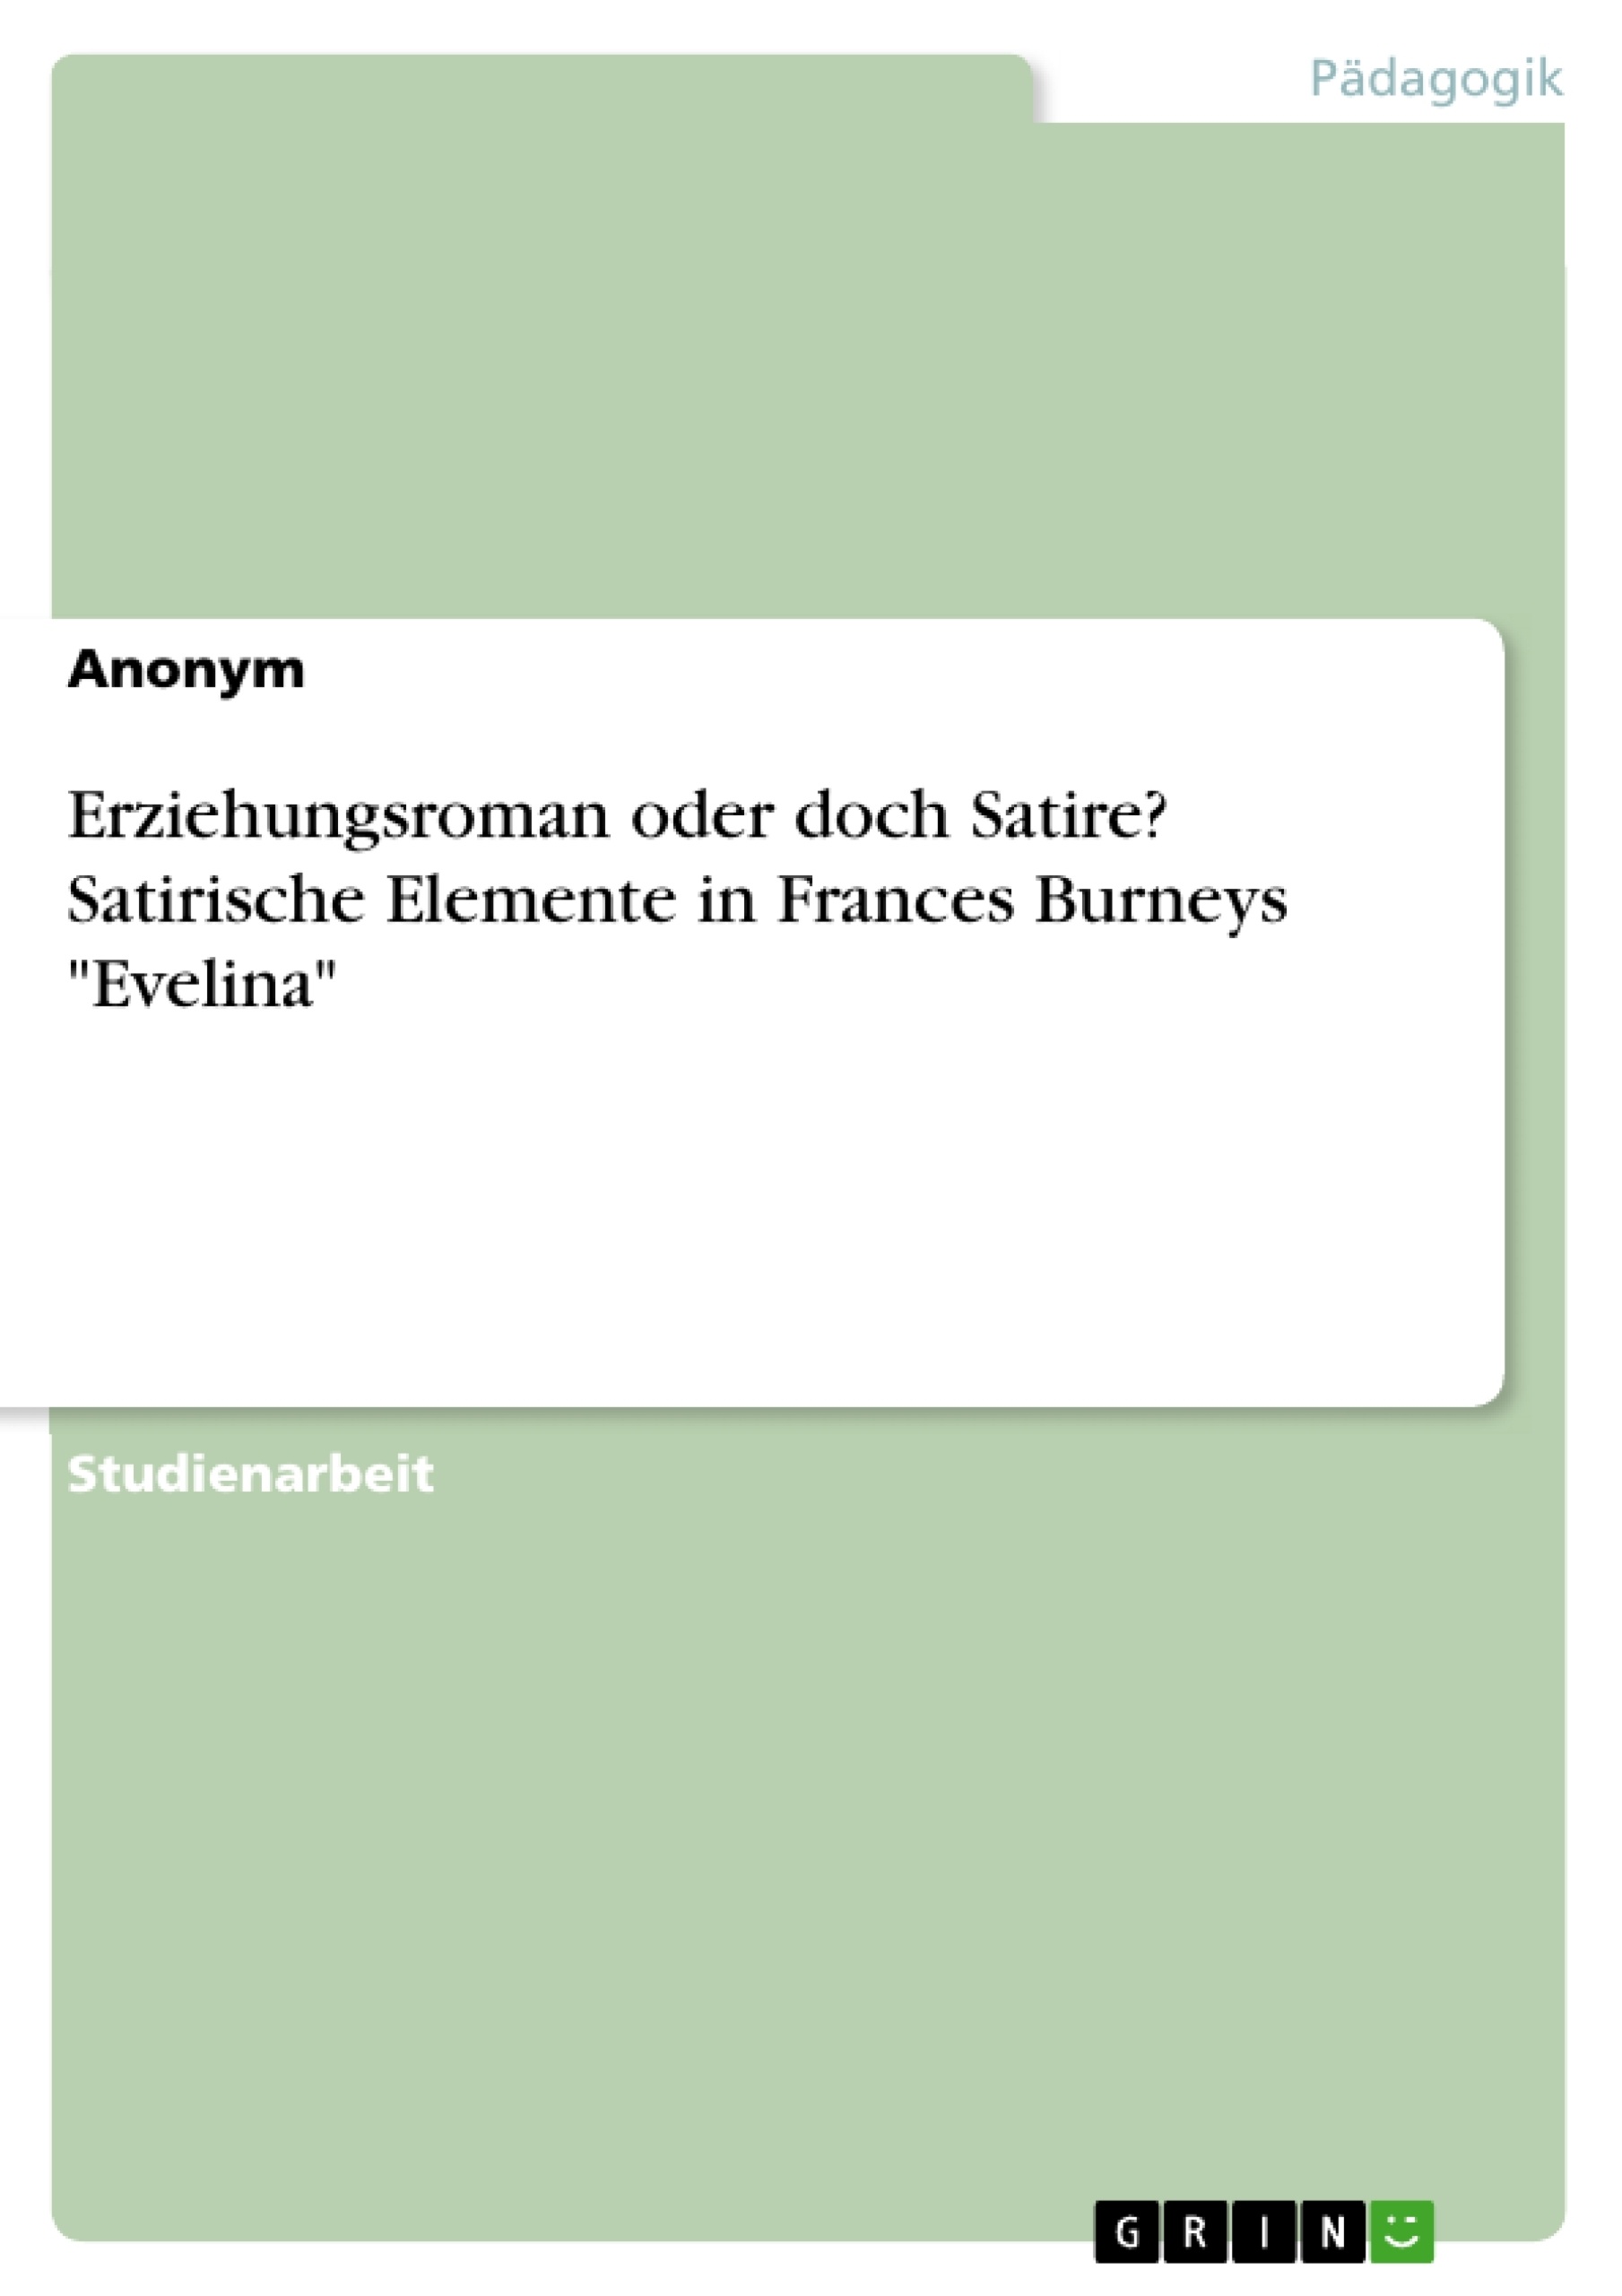 Título: Erziehungsroman oder doch Satire? Satirische Elemente in Frances Burneys "Evelina"